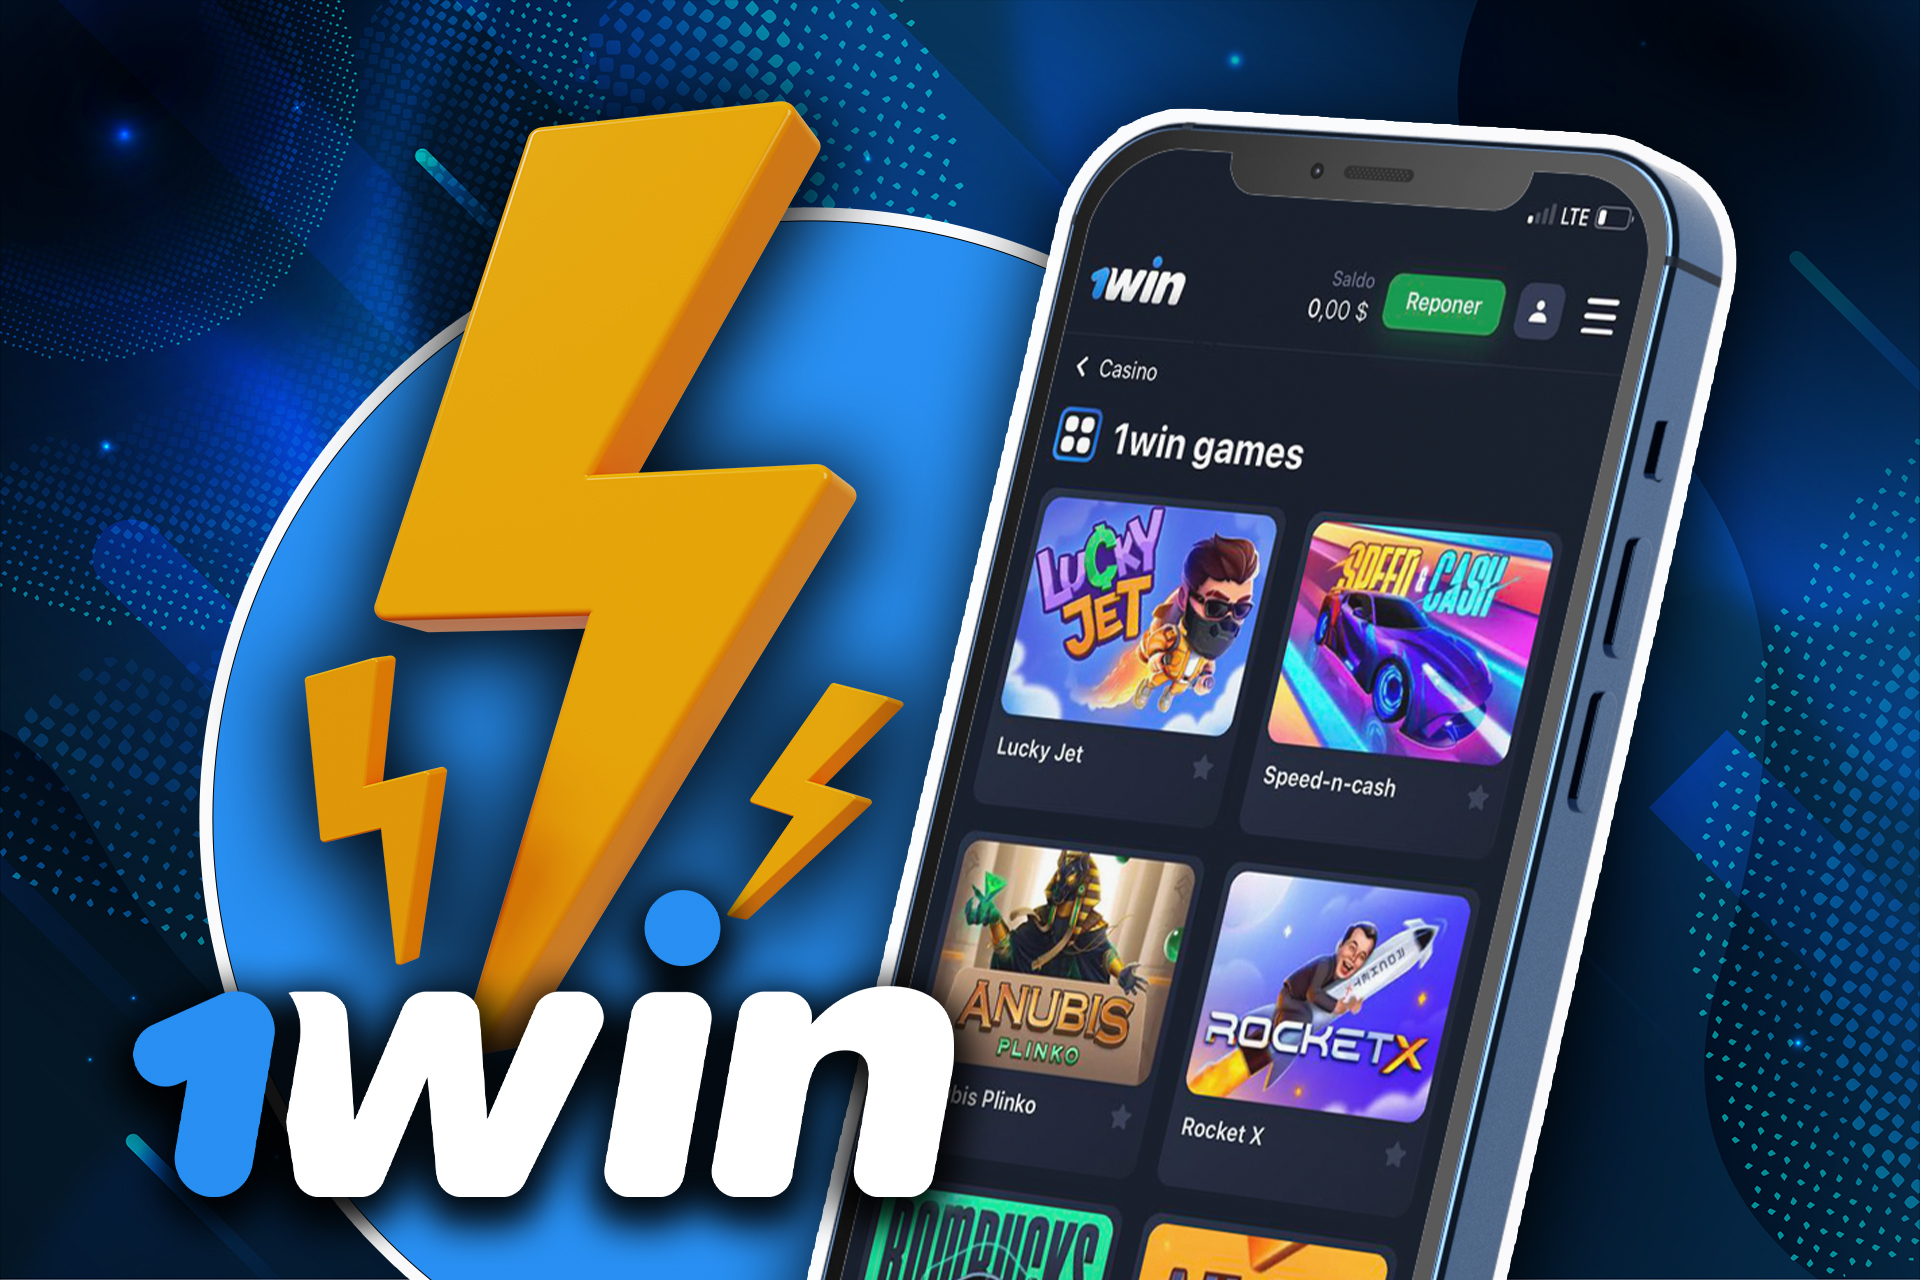 En 1win casino encontrarás todos los juegos populares y favoritos.